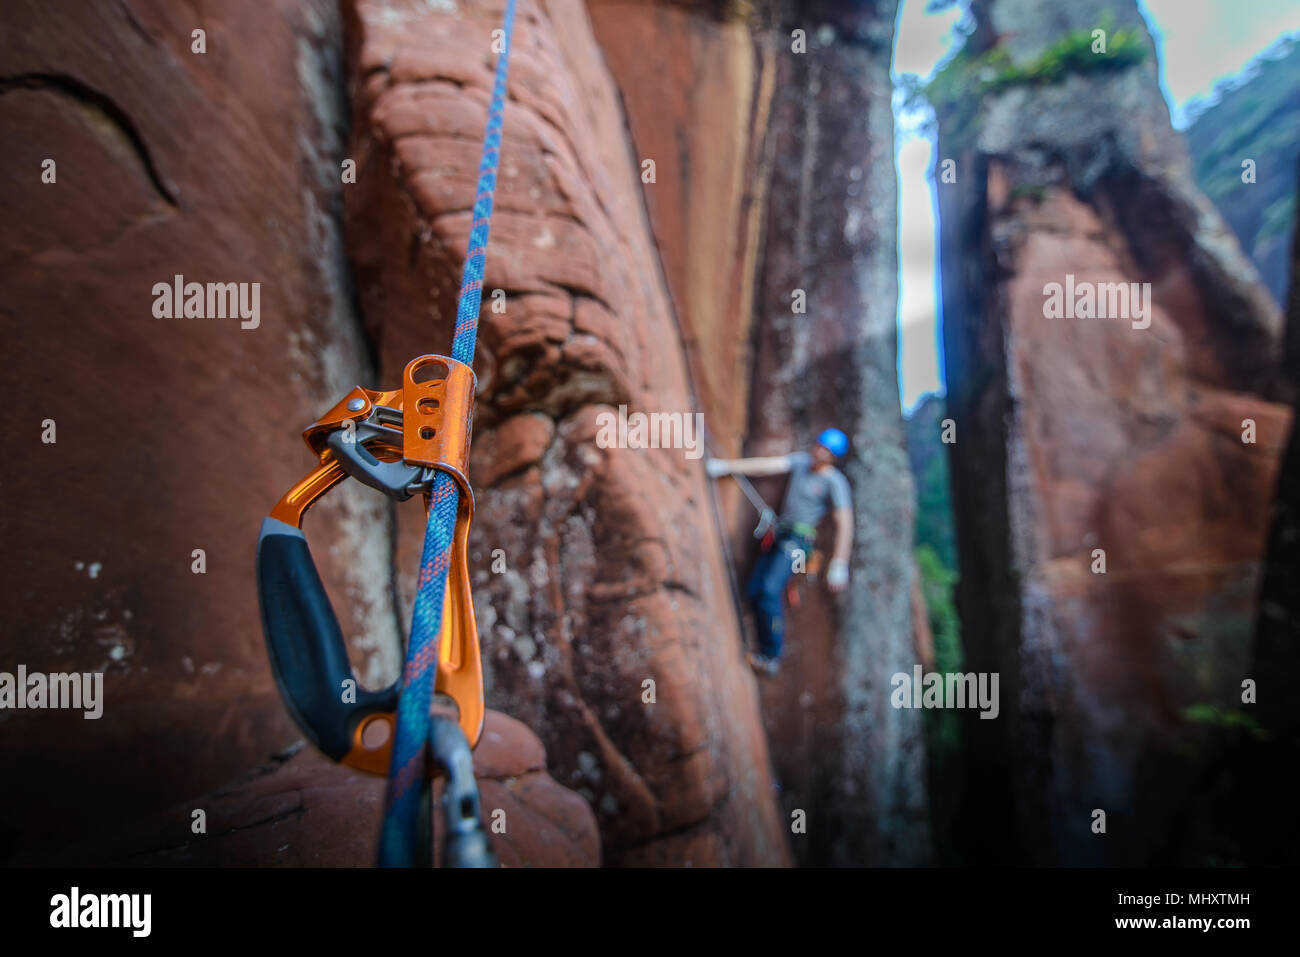 Kletterer klettern Sandsteinfelsen, Fokus auf Anlagen im Vordergrund, Kalken, Provinz Yunnan, China Stockfoto